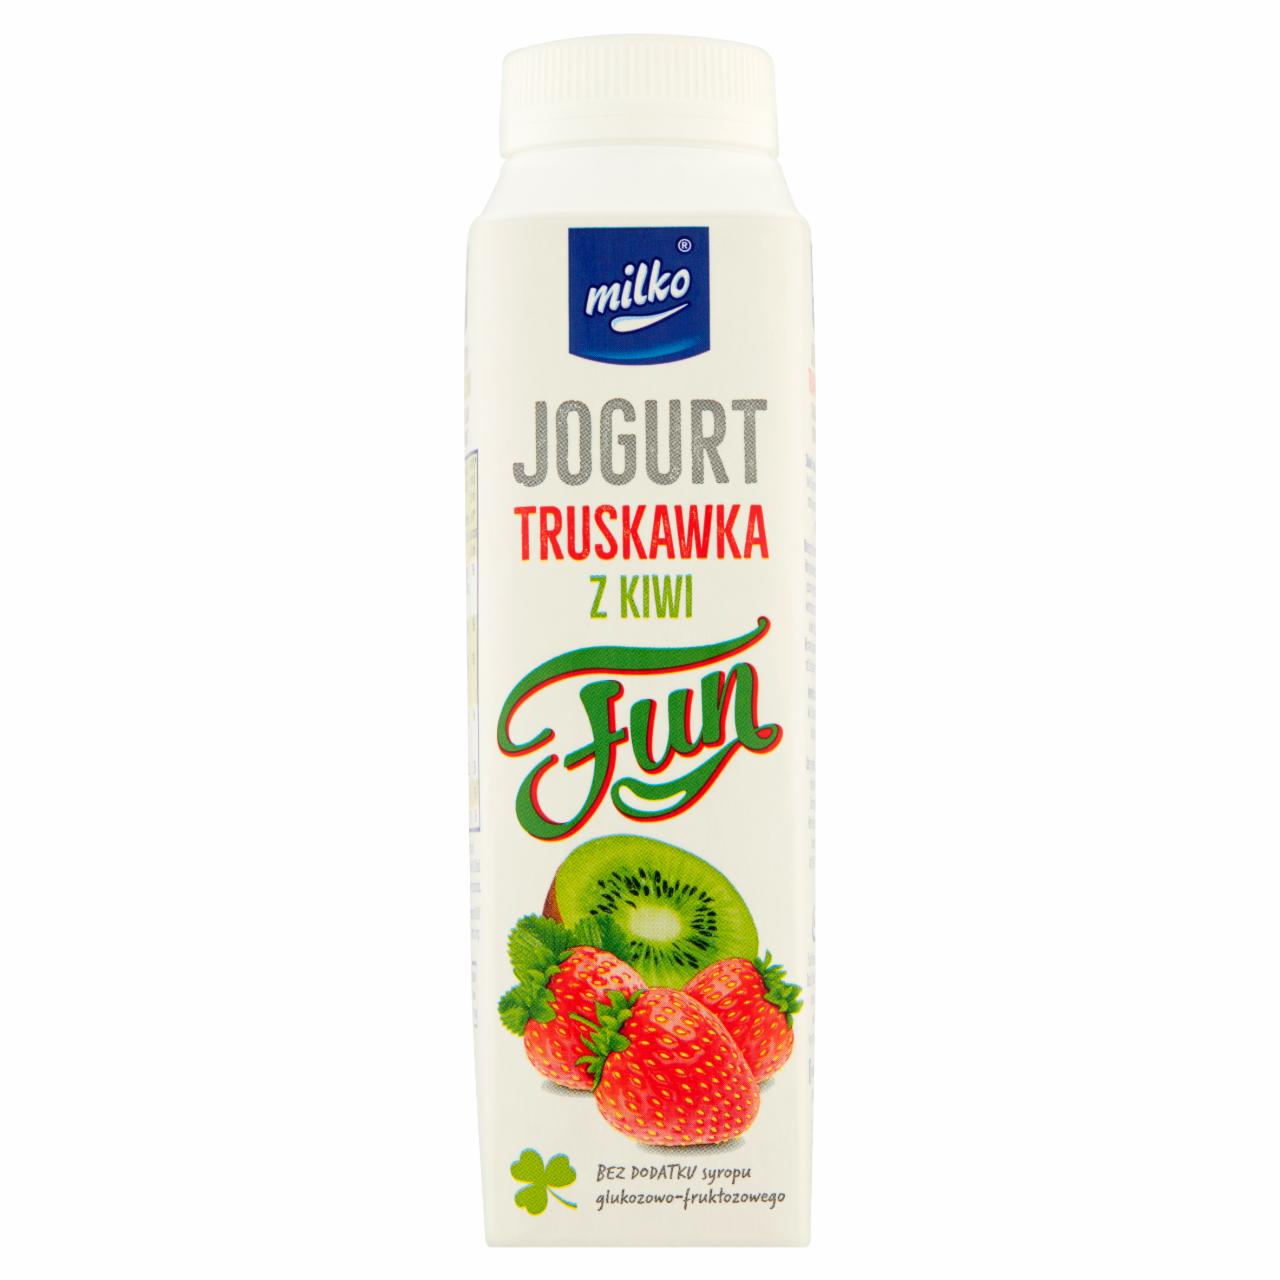 Zdjęcia - Milko Fun Jogurt truskawka z kiwi 330 ml